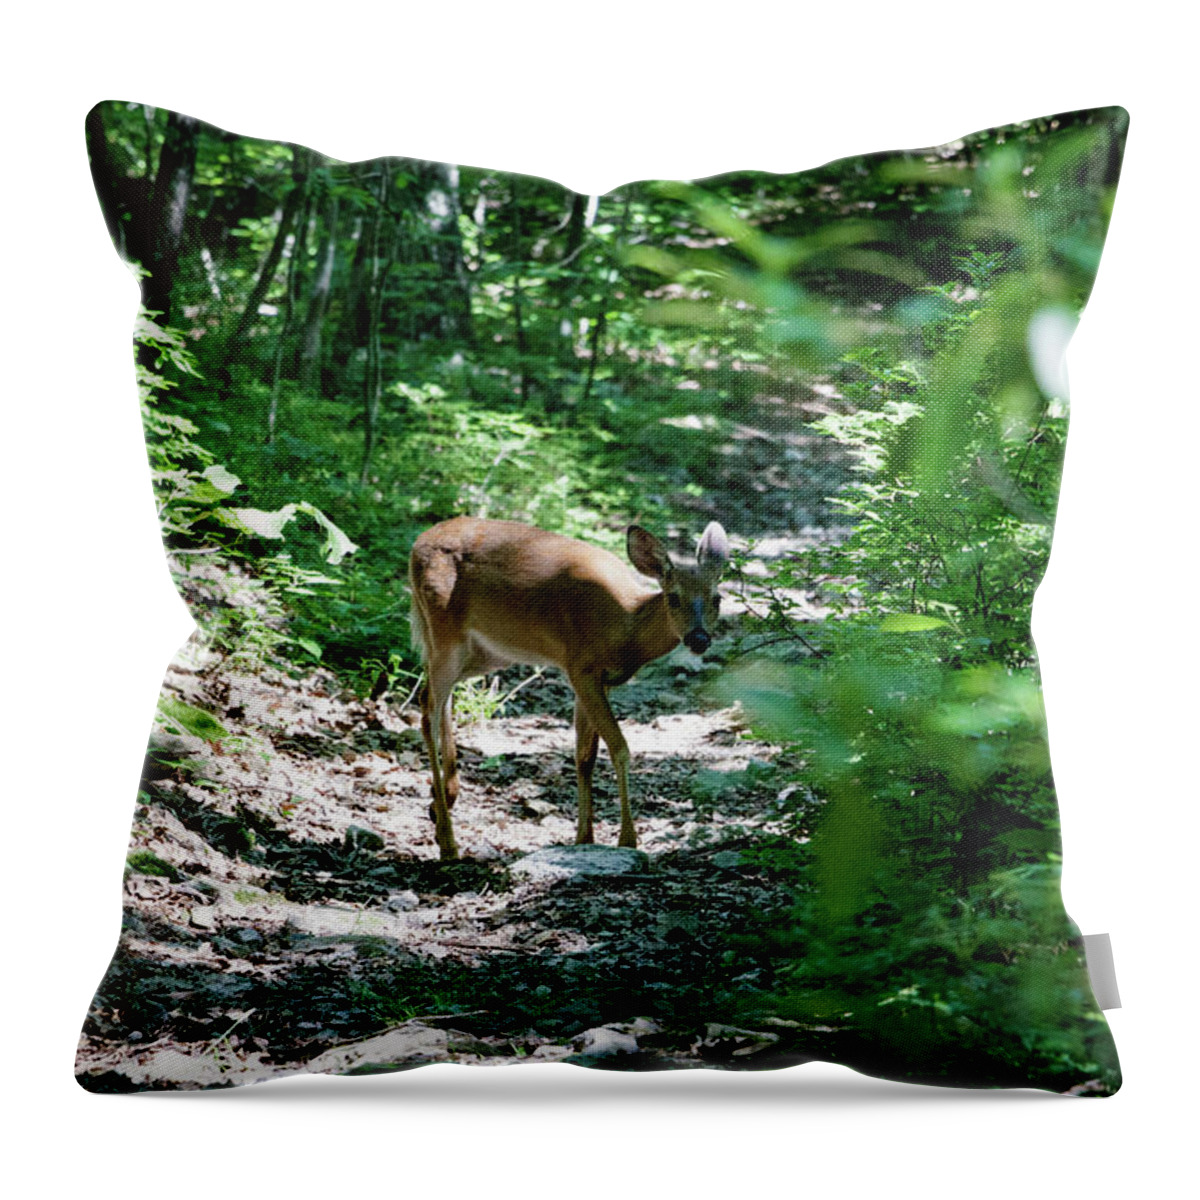 Deer Throw Pillow featuring the photograph Curious Deer 2 by Natural Vista Photography - Matt Sexton